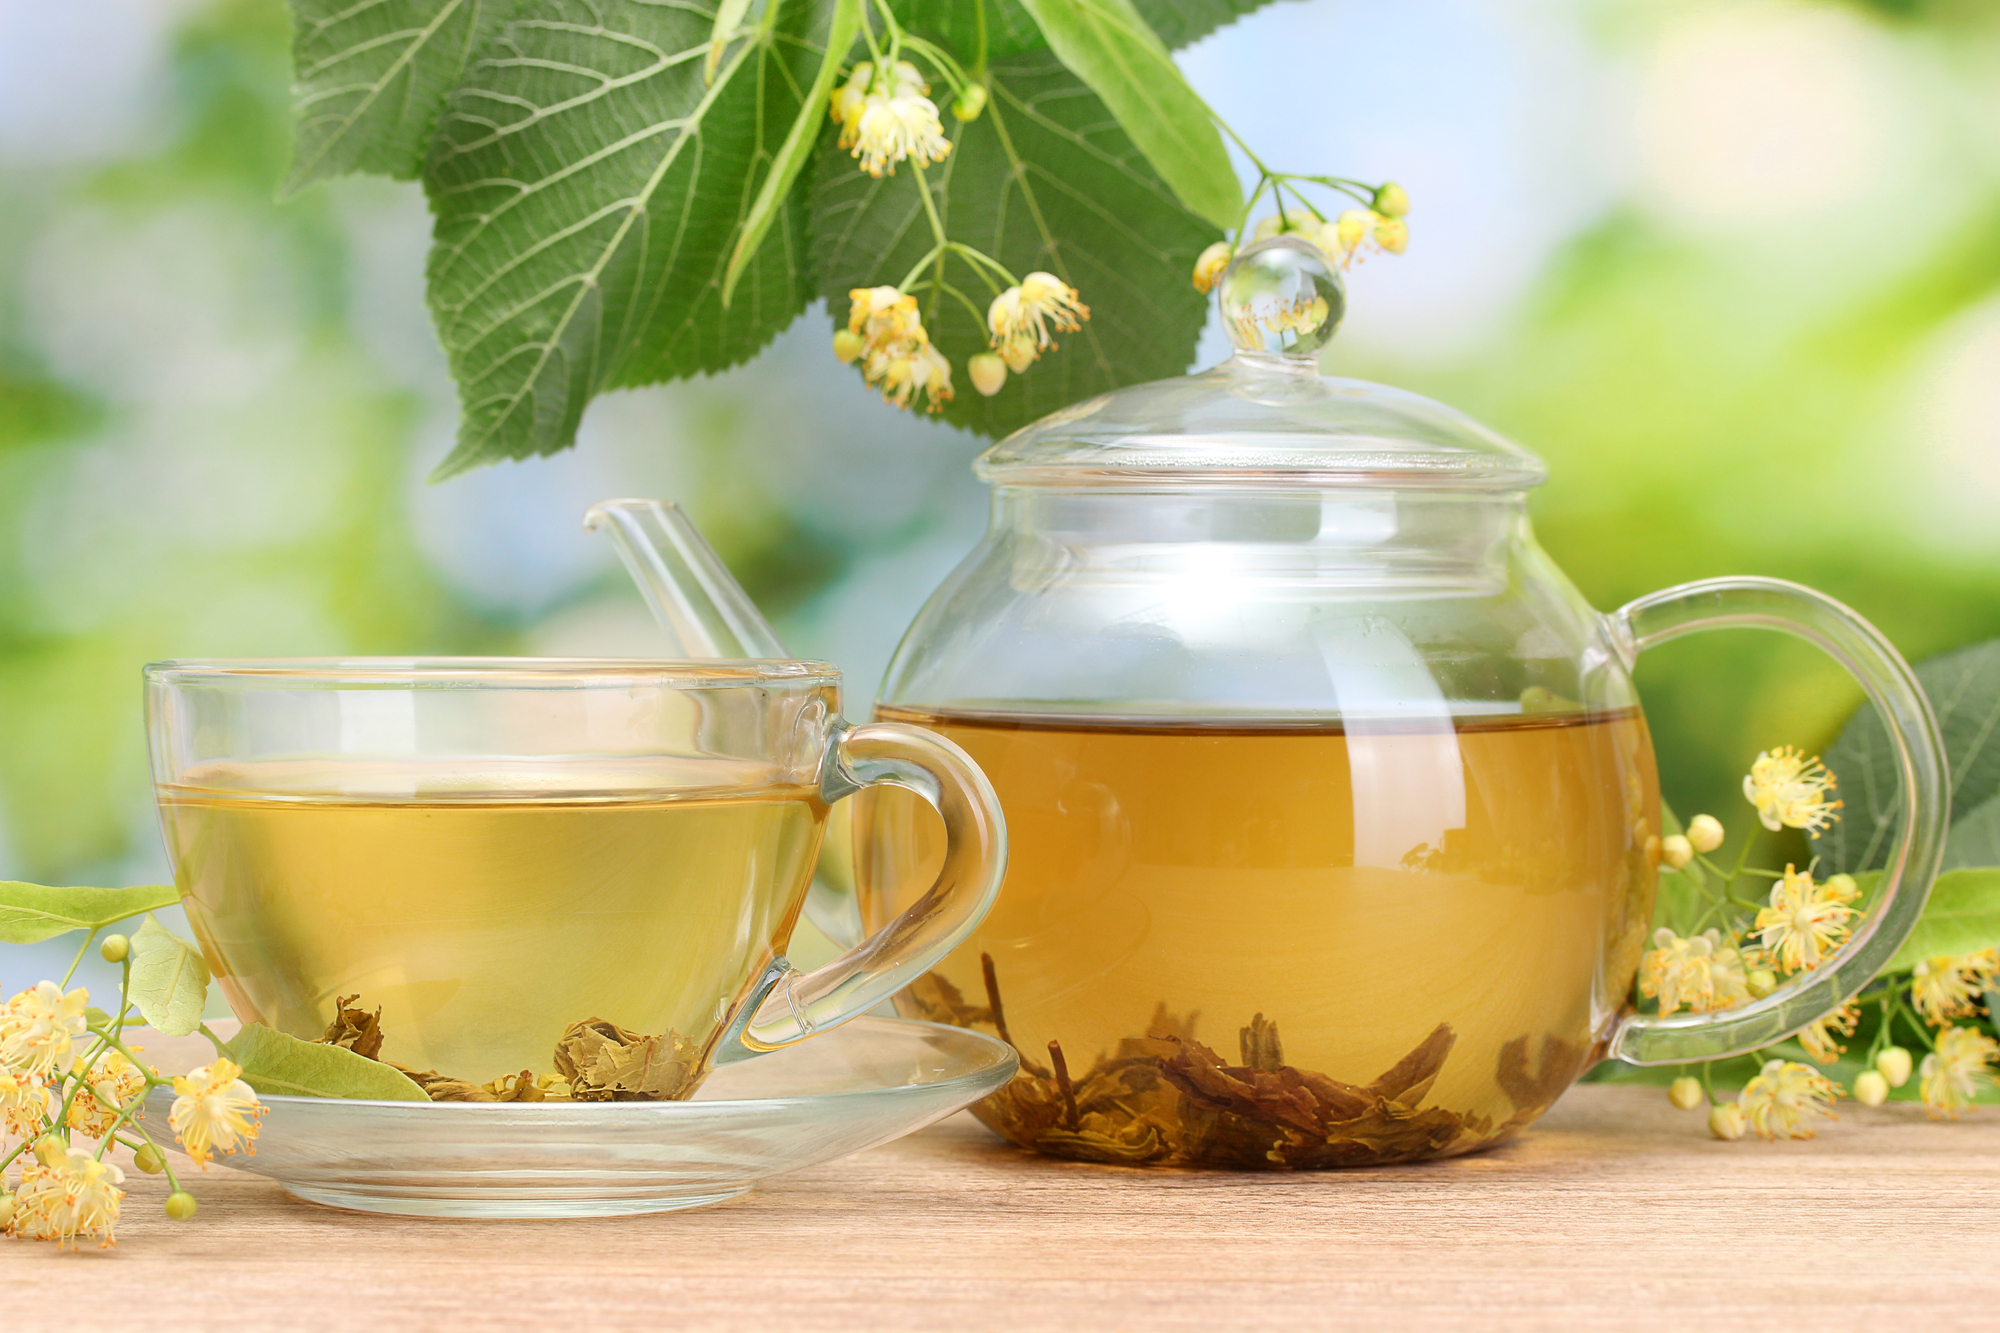 Ceaiul care te scapă de răceală și gripă, cu multe beneficii pentru organism. Tratează insomnia și te ajută să slăbești/ SURSA FOTO: depositphotos.com